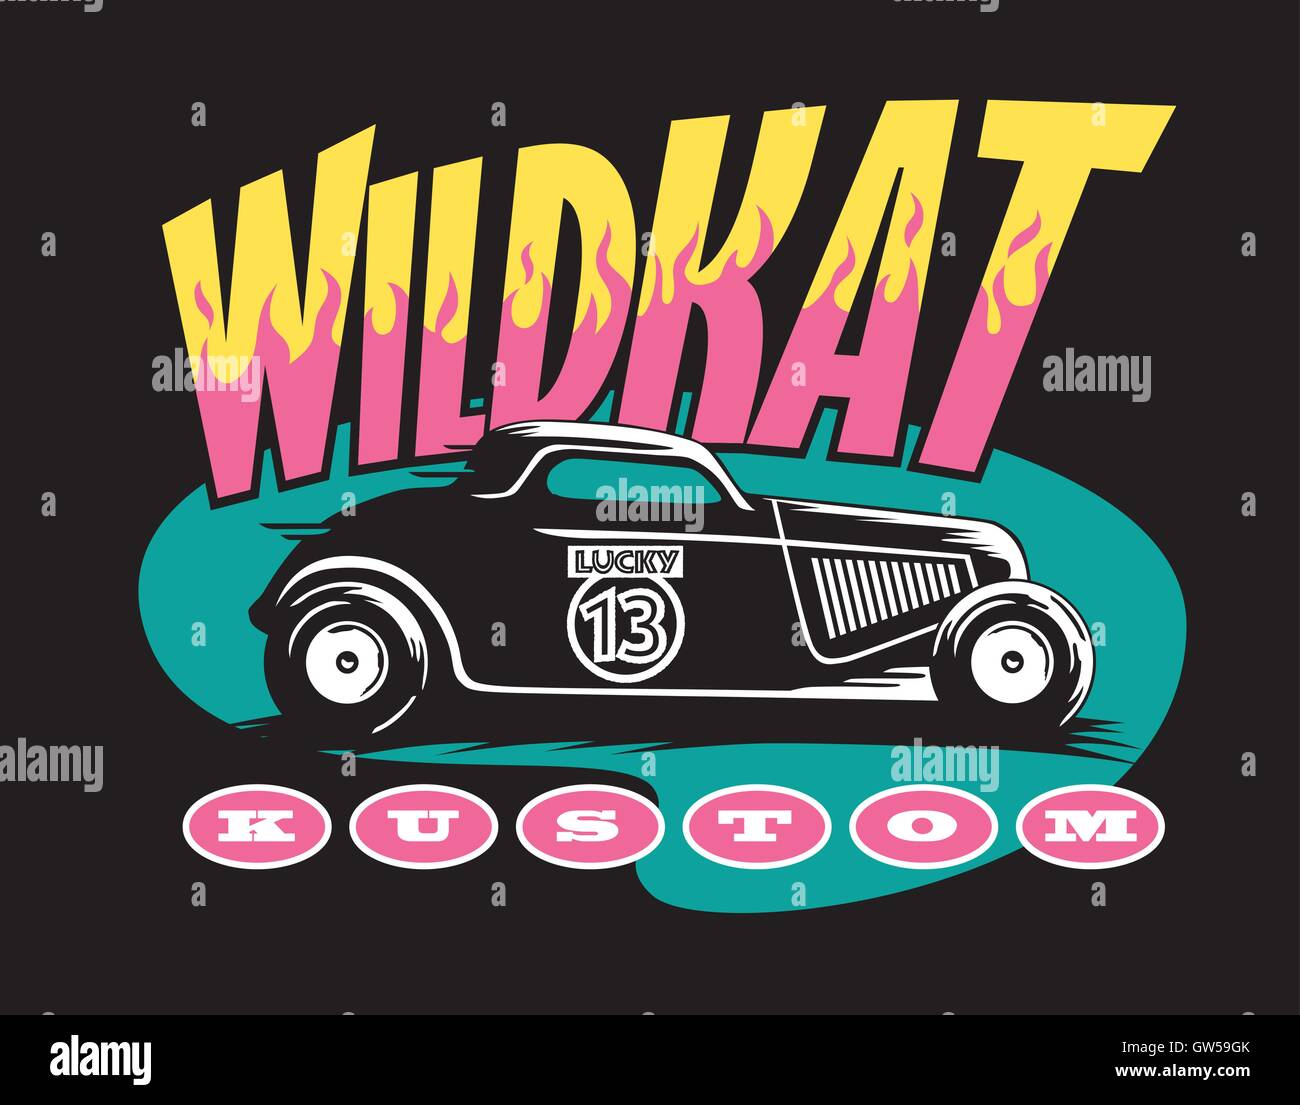 Wildkat Kustom hot rod vector design. Retro Vintage style rockabilly car design avec lucky 13 peint sur la porte. Typographie personnalisée avec des flammes. Illustration de Vecteur